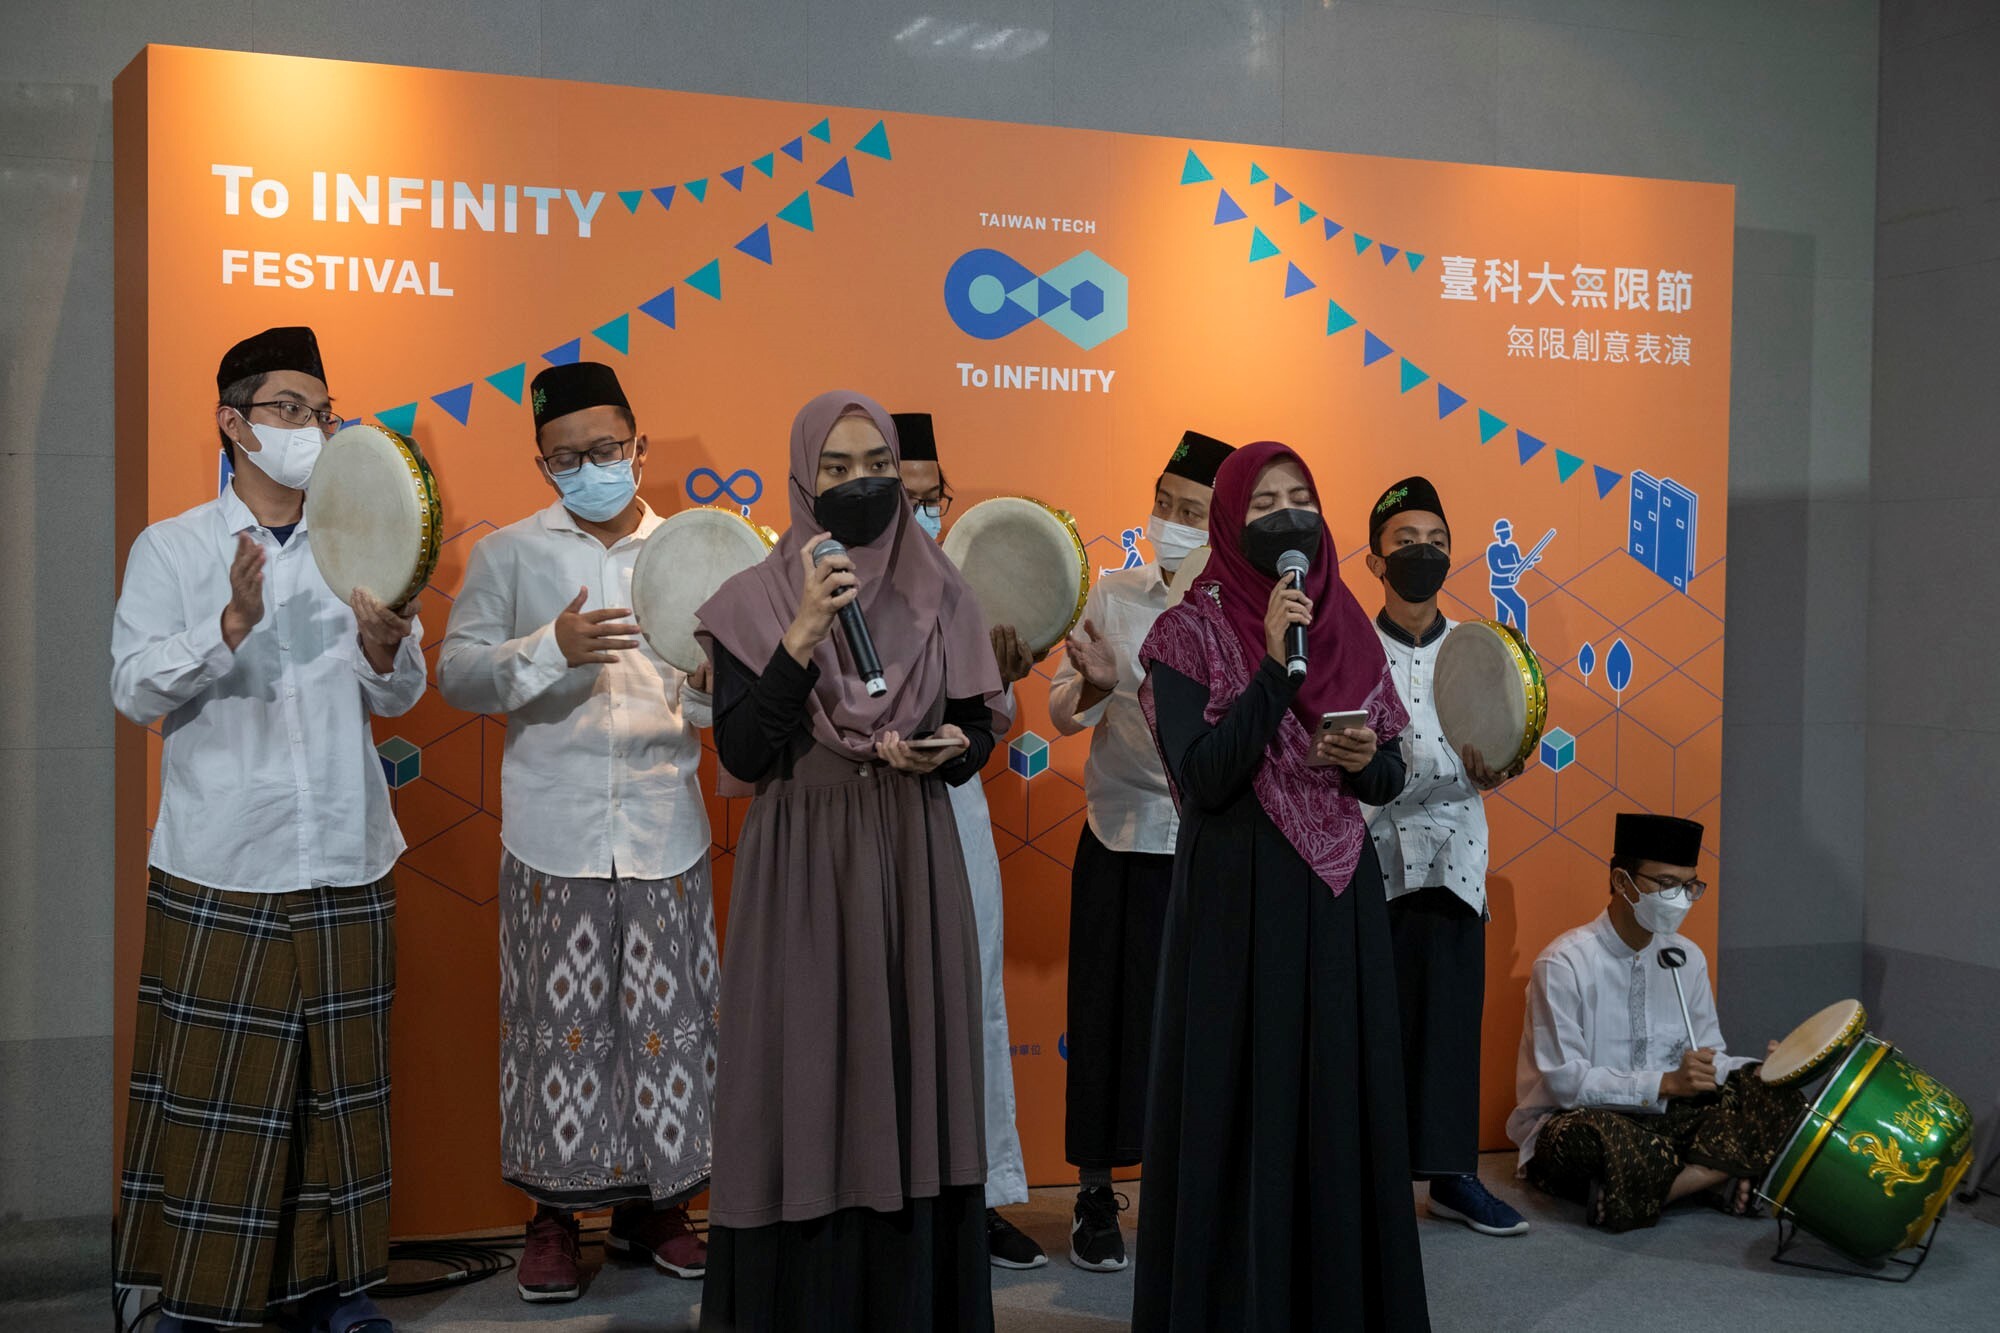 無限節學生表演活動－臺科大印尼學生帶來當地傳統音樂表演